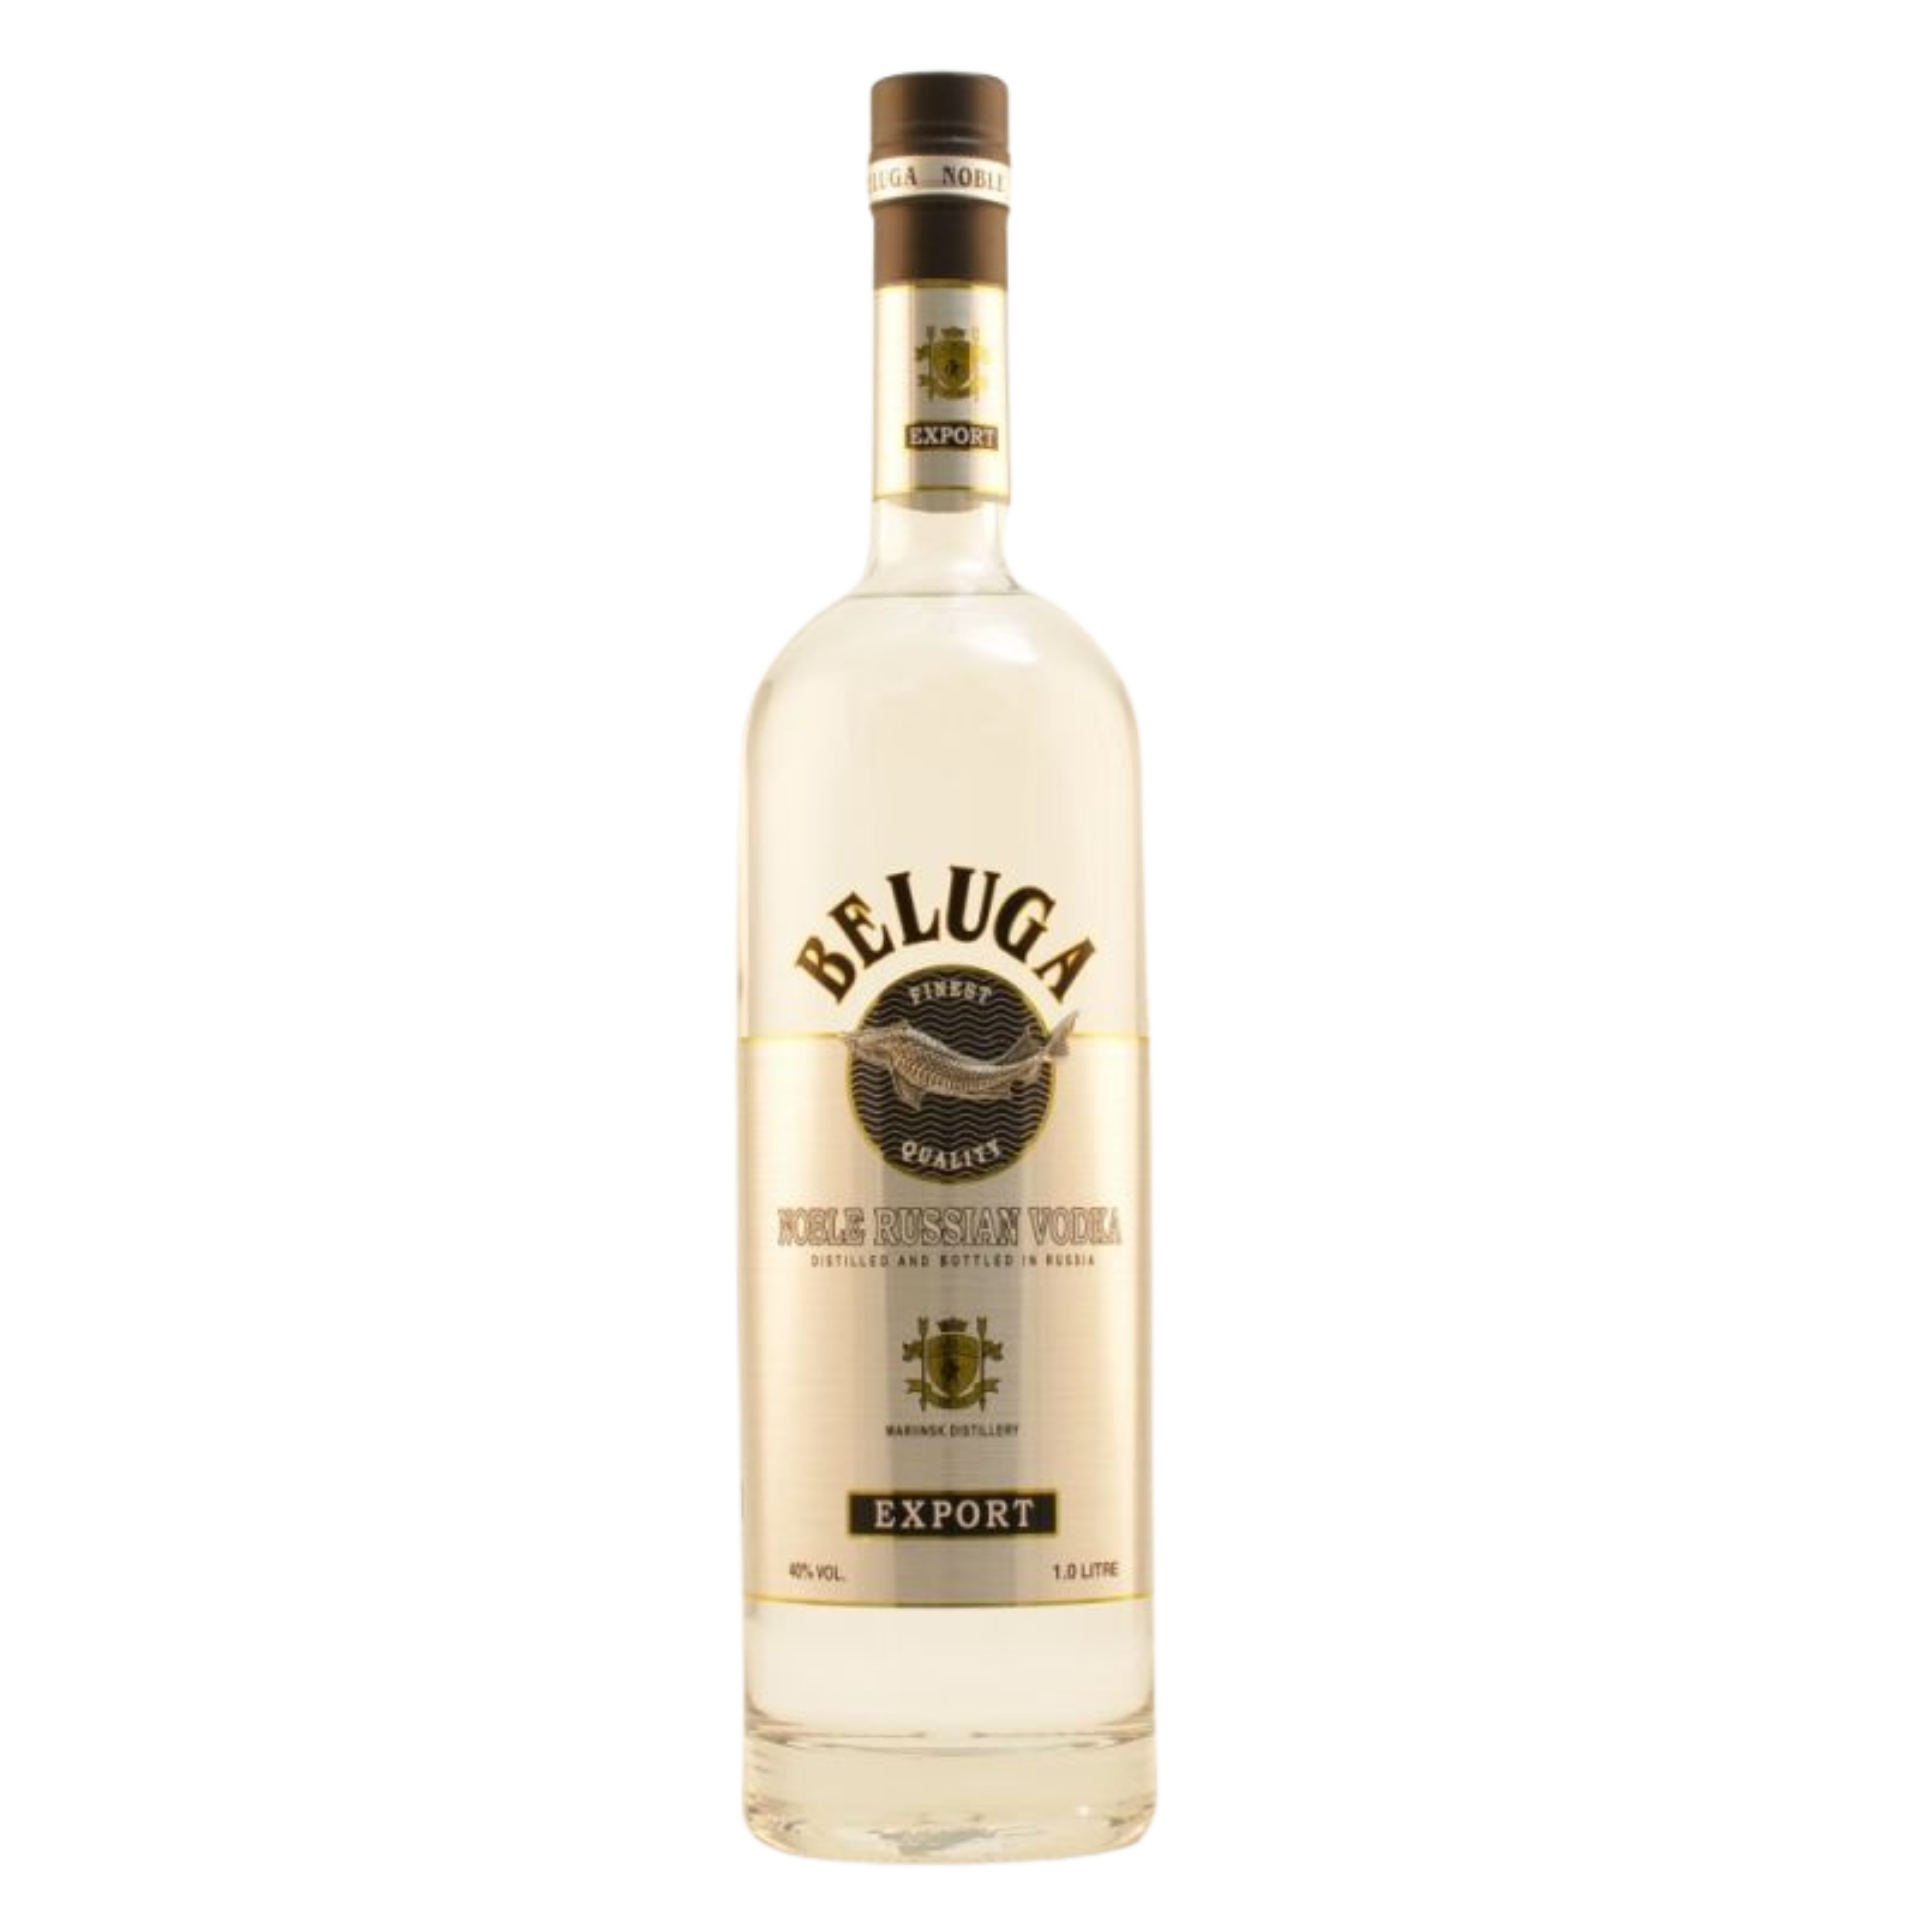 Beluga Noble Vodka 40% 1,0l